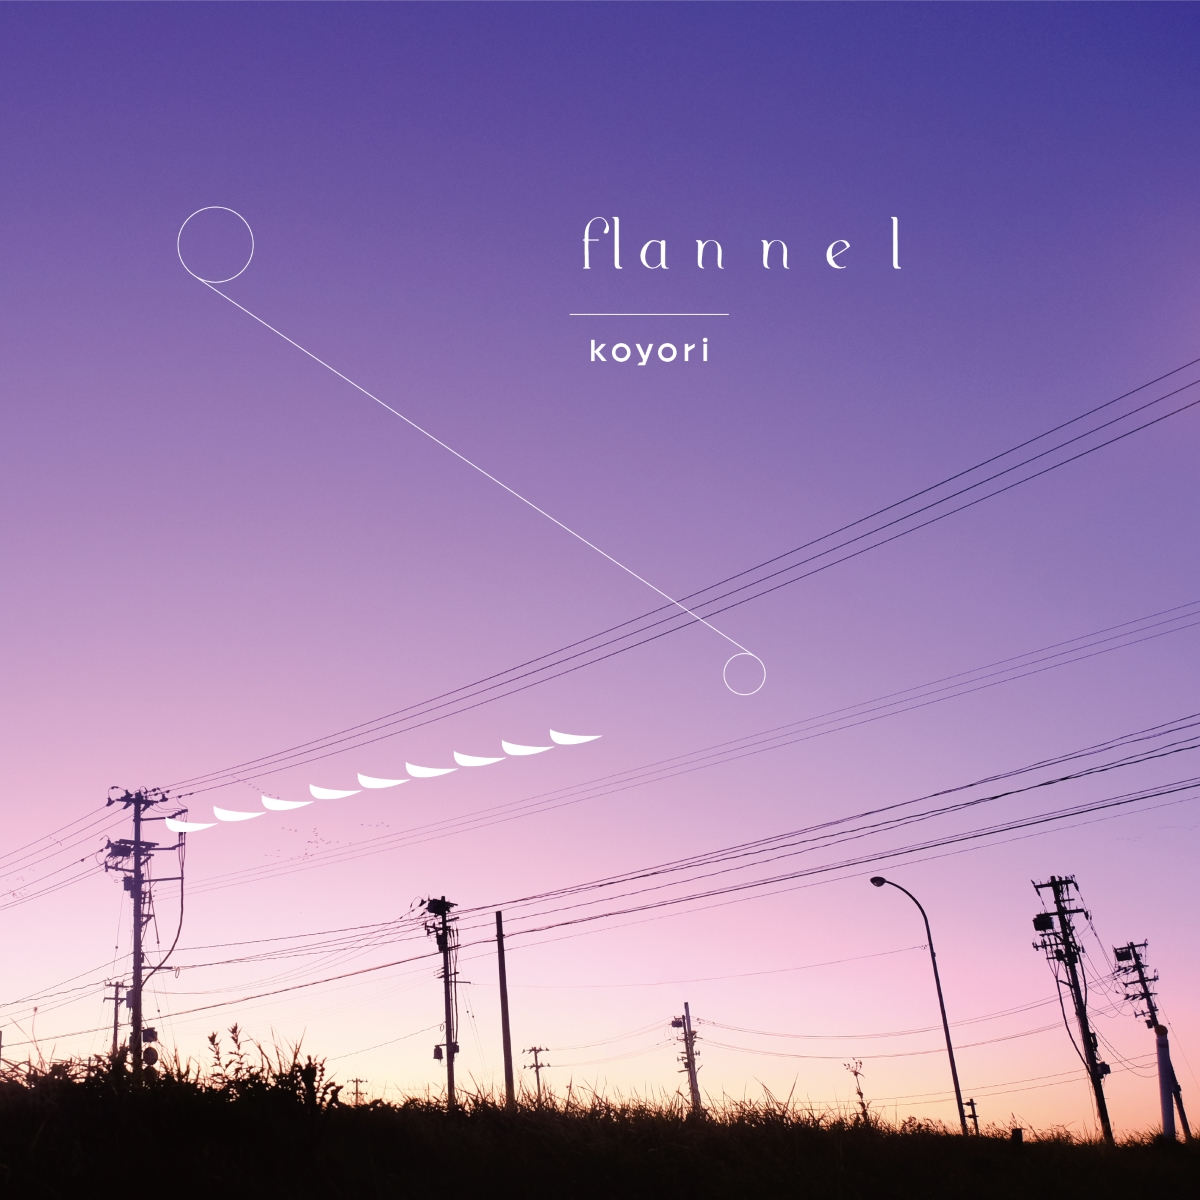 さよならテンダー歌词 歌手koyori / 初音ミク-专辑flannel-单曲《さよならテンダー》LRC歌词下载